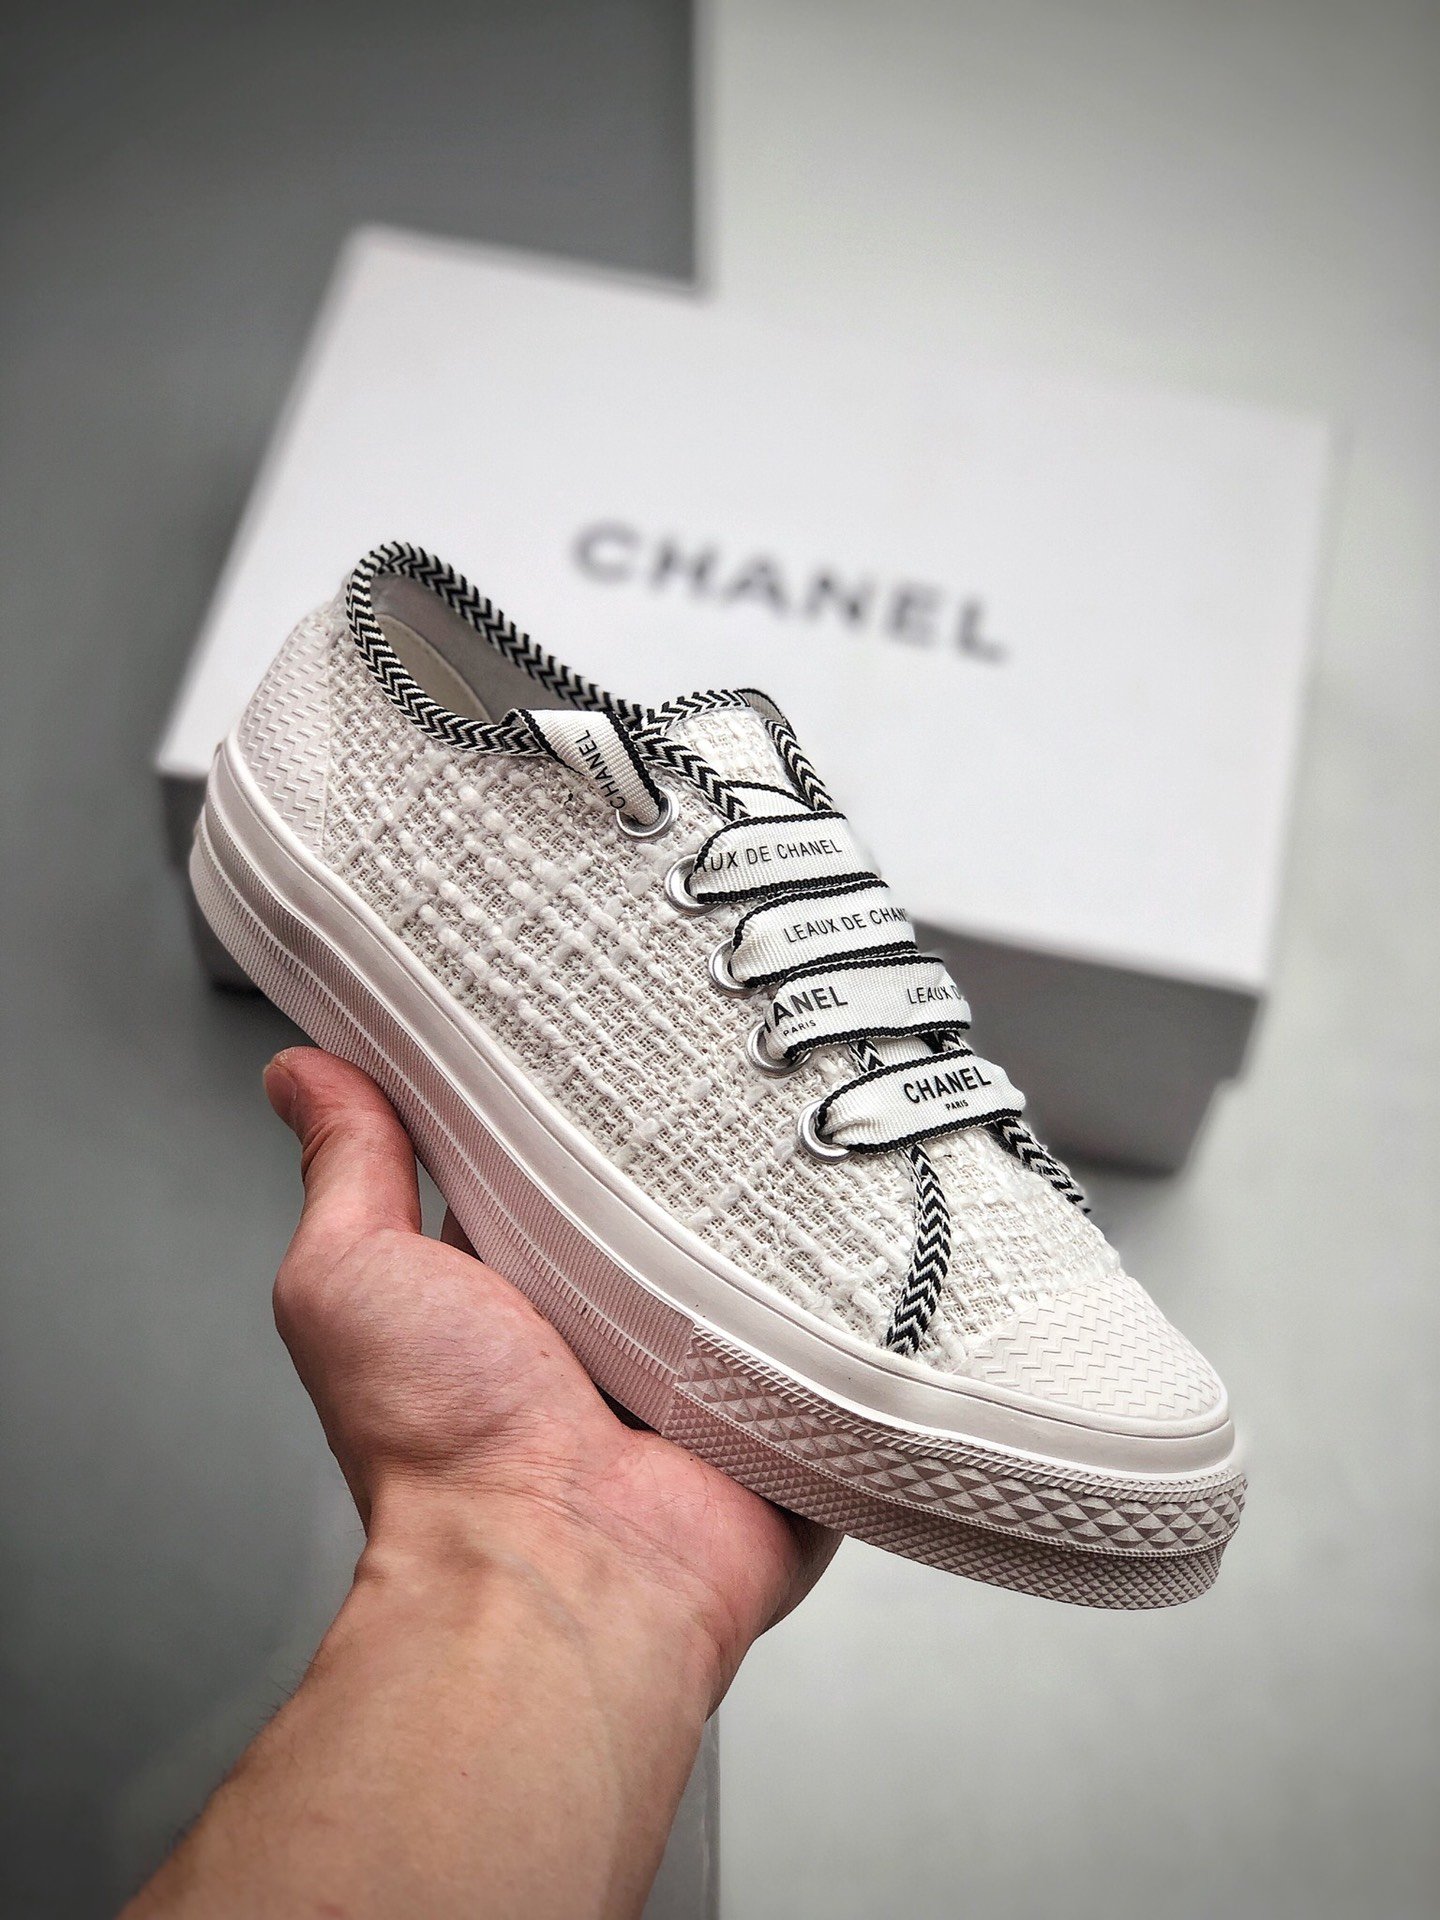 Chanel x Converse Walking shoes woman white | Lazada